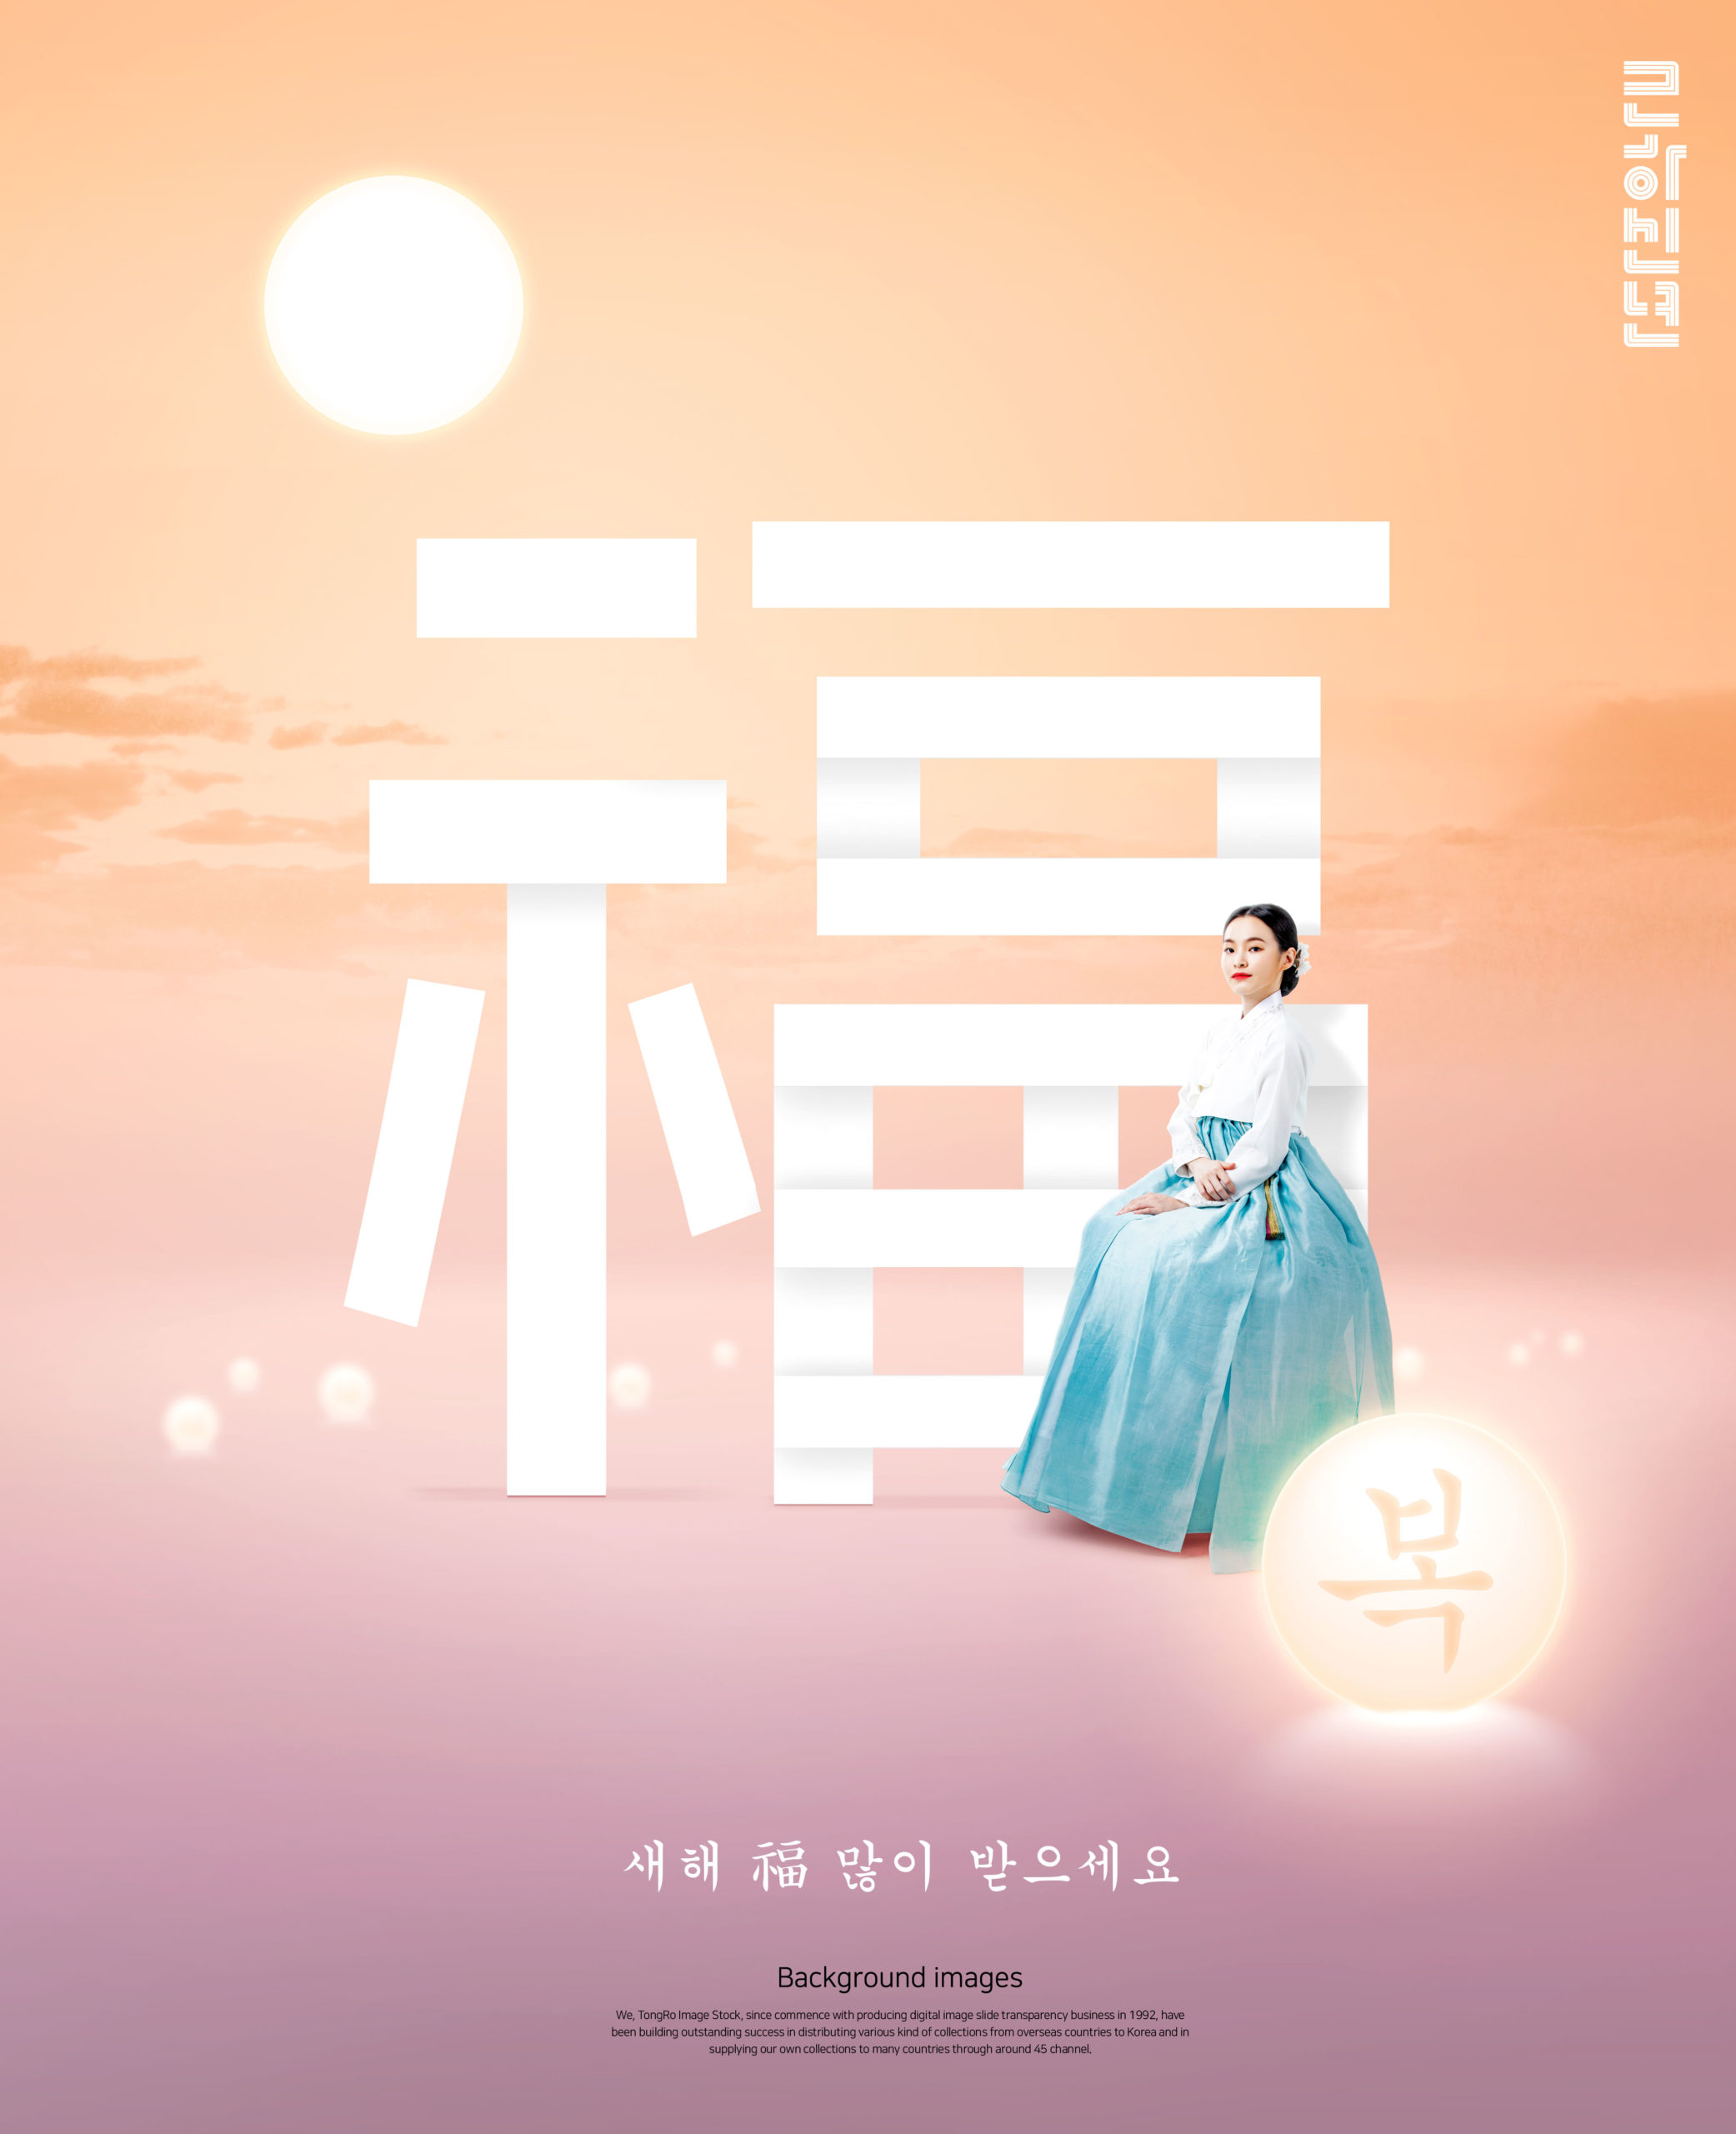 韩国元素风格”福到/月圆”新年主题海报模板套装[PSD]插图(1)